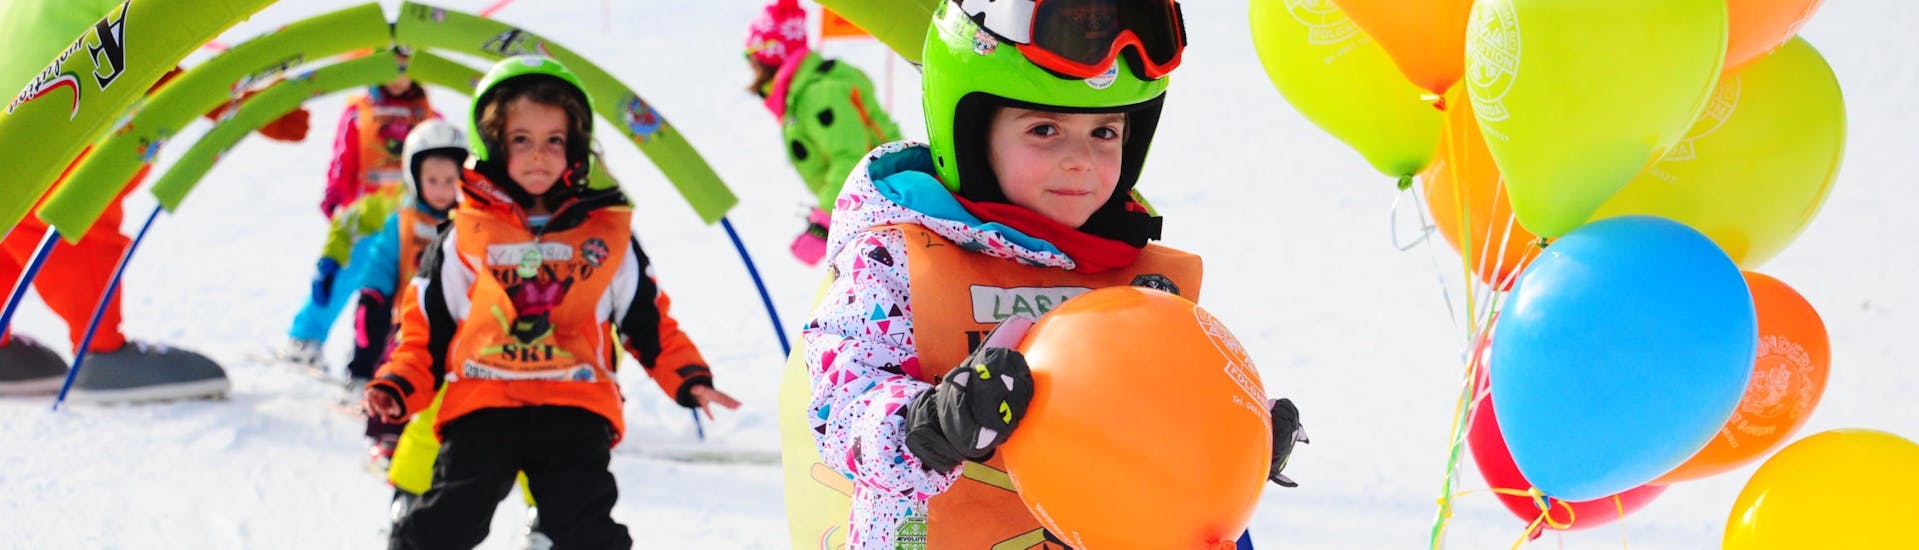 Le Lezioni di sci per bambini (4-13 anni) - Tutti livelli della Scuola di Sci AEvolution Folgarida si stanno svolgendo nel campo scuola; finiti gli ostacoli la bambina si merita un palloncino.